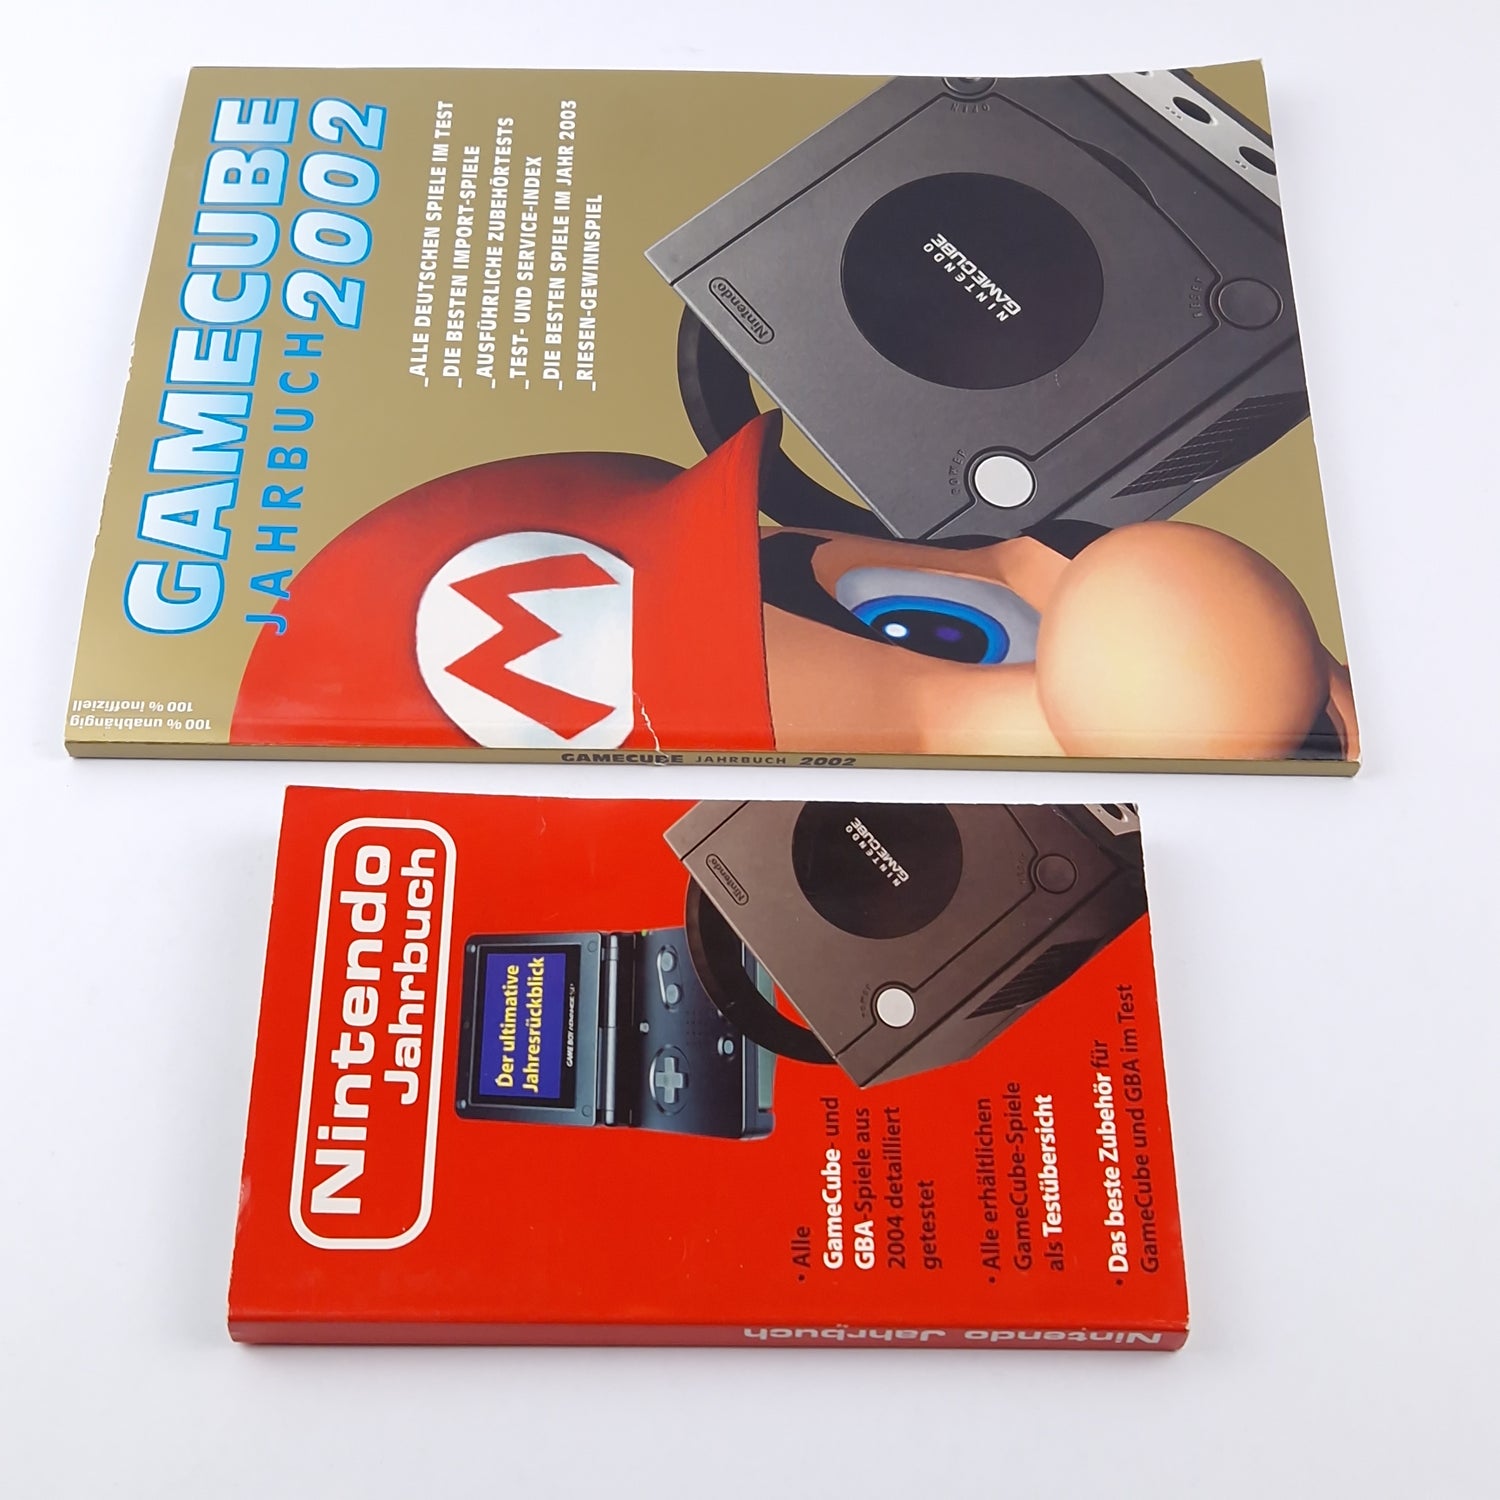 Nintendo Gamecube Yearbook 2002 & Nintendo Yearbook 2004 GBA Gamecube Magazine